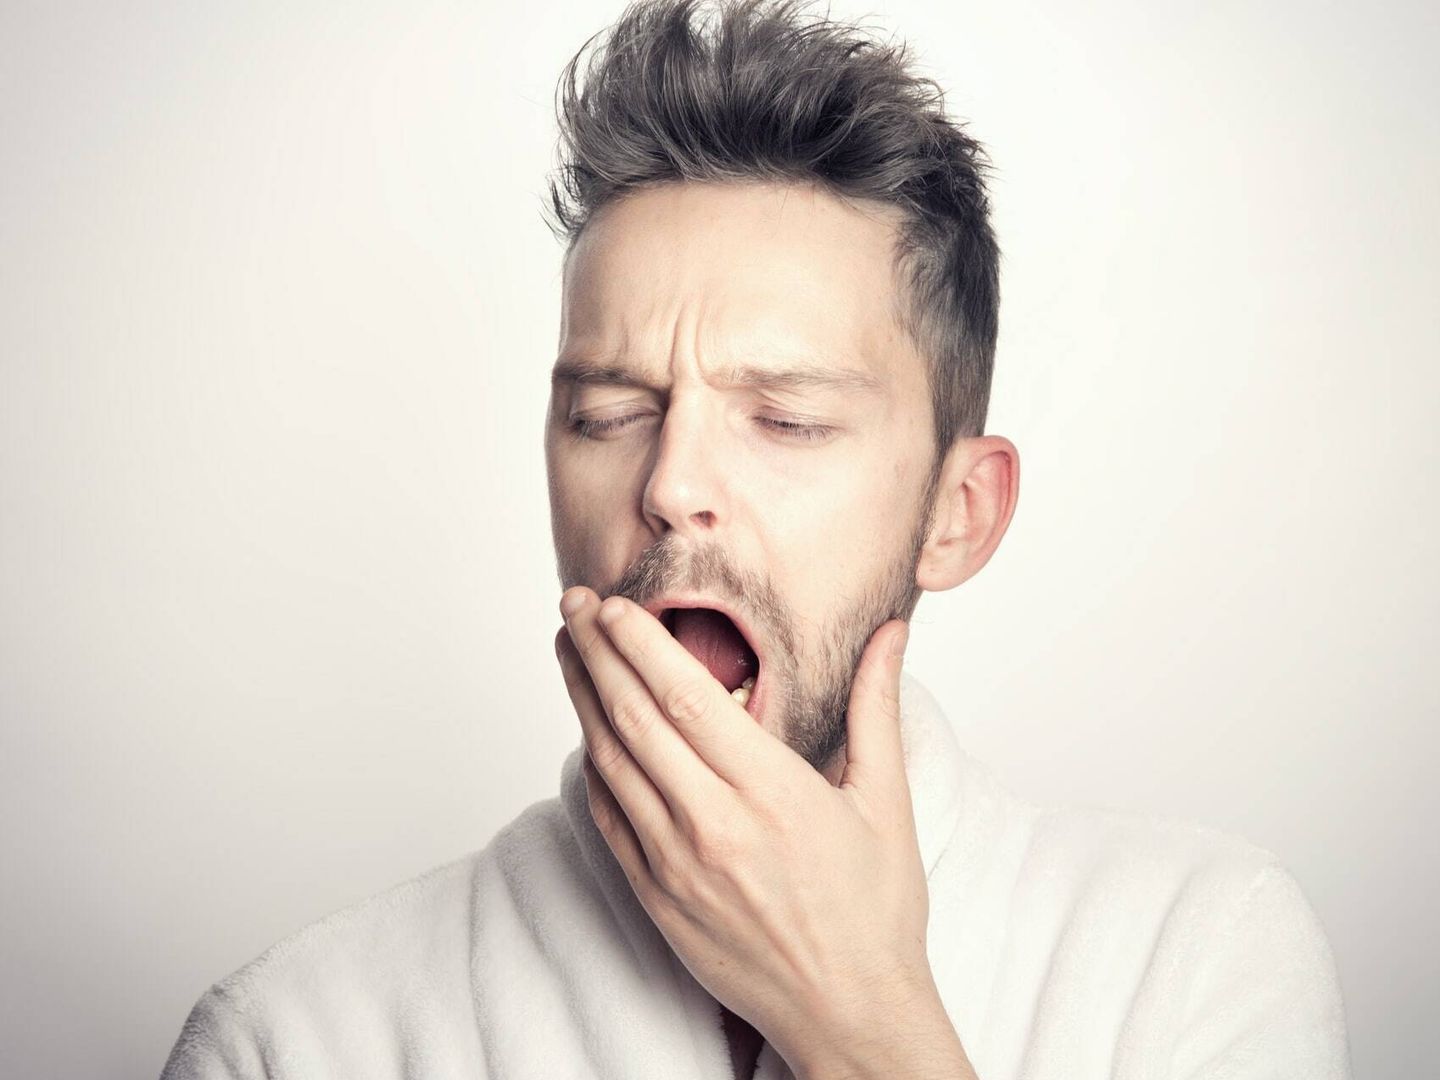 Una investigación reveló que los hombres se inclinaban por la comida menos saludable después dormir mal (Unsplash)